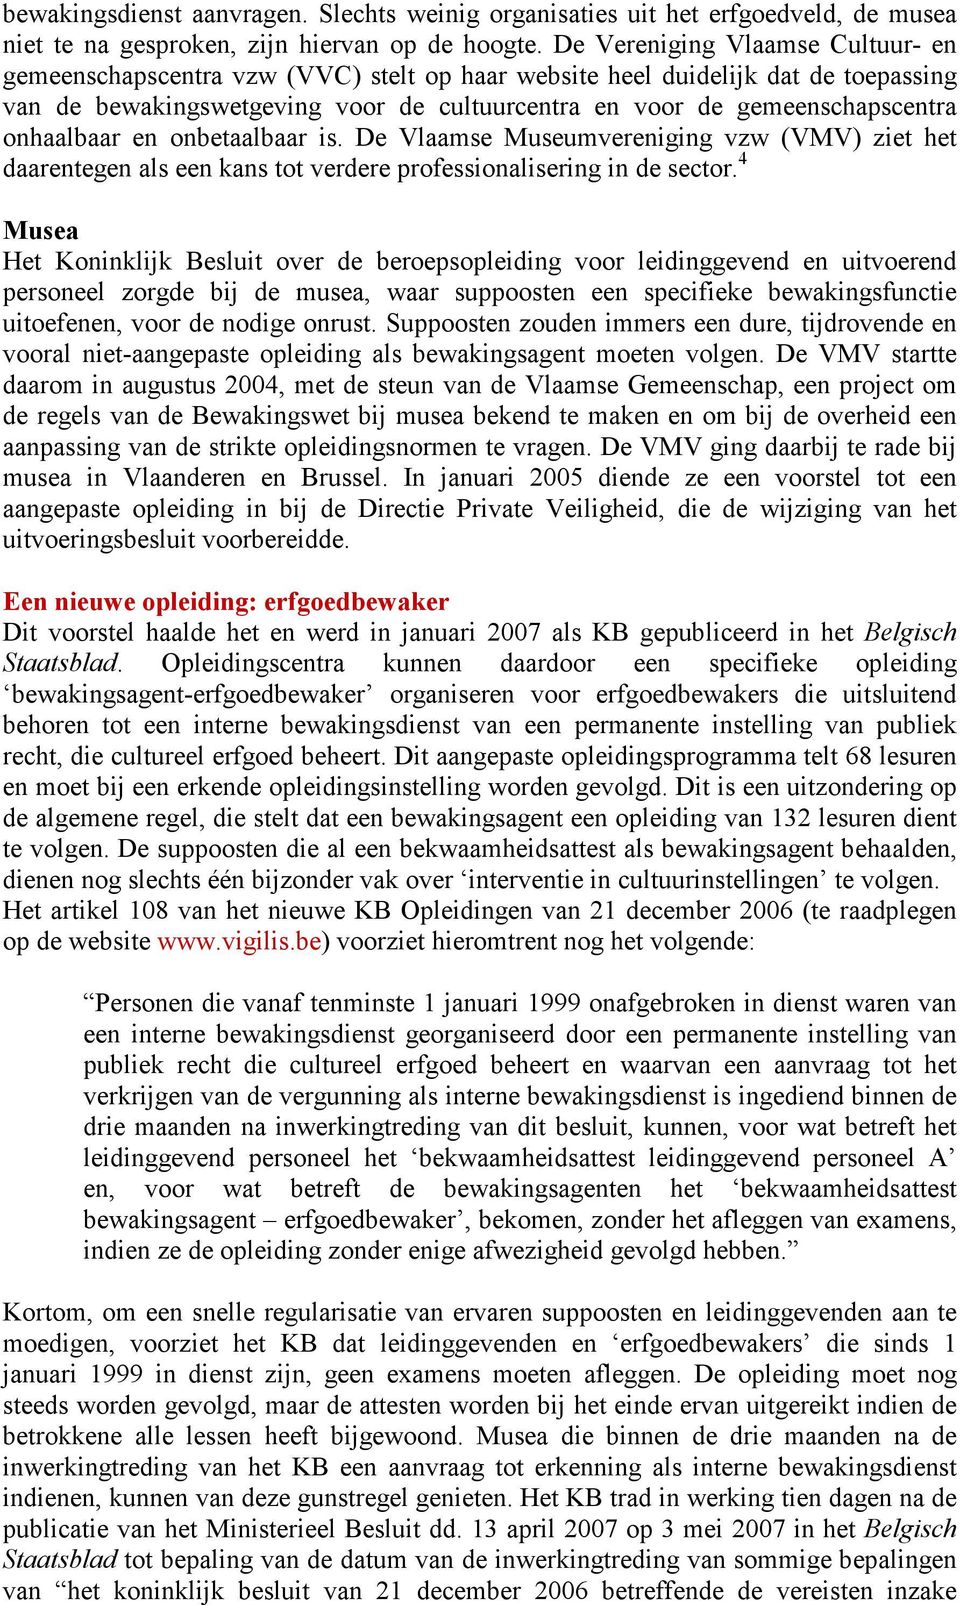 onhaalbaar en onbetaalbaar is. De Vlaamse Museumvereniging vzw (VMV) ziet het daarentegen als een kans tot verdere professionalisering in de sector.